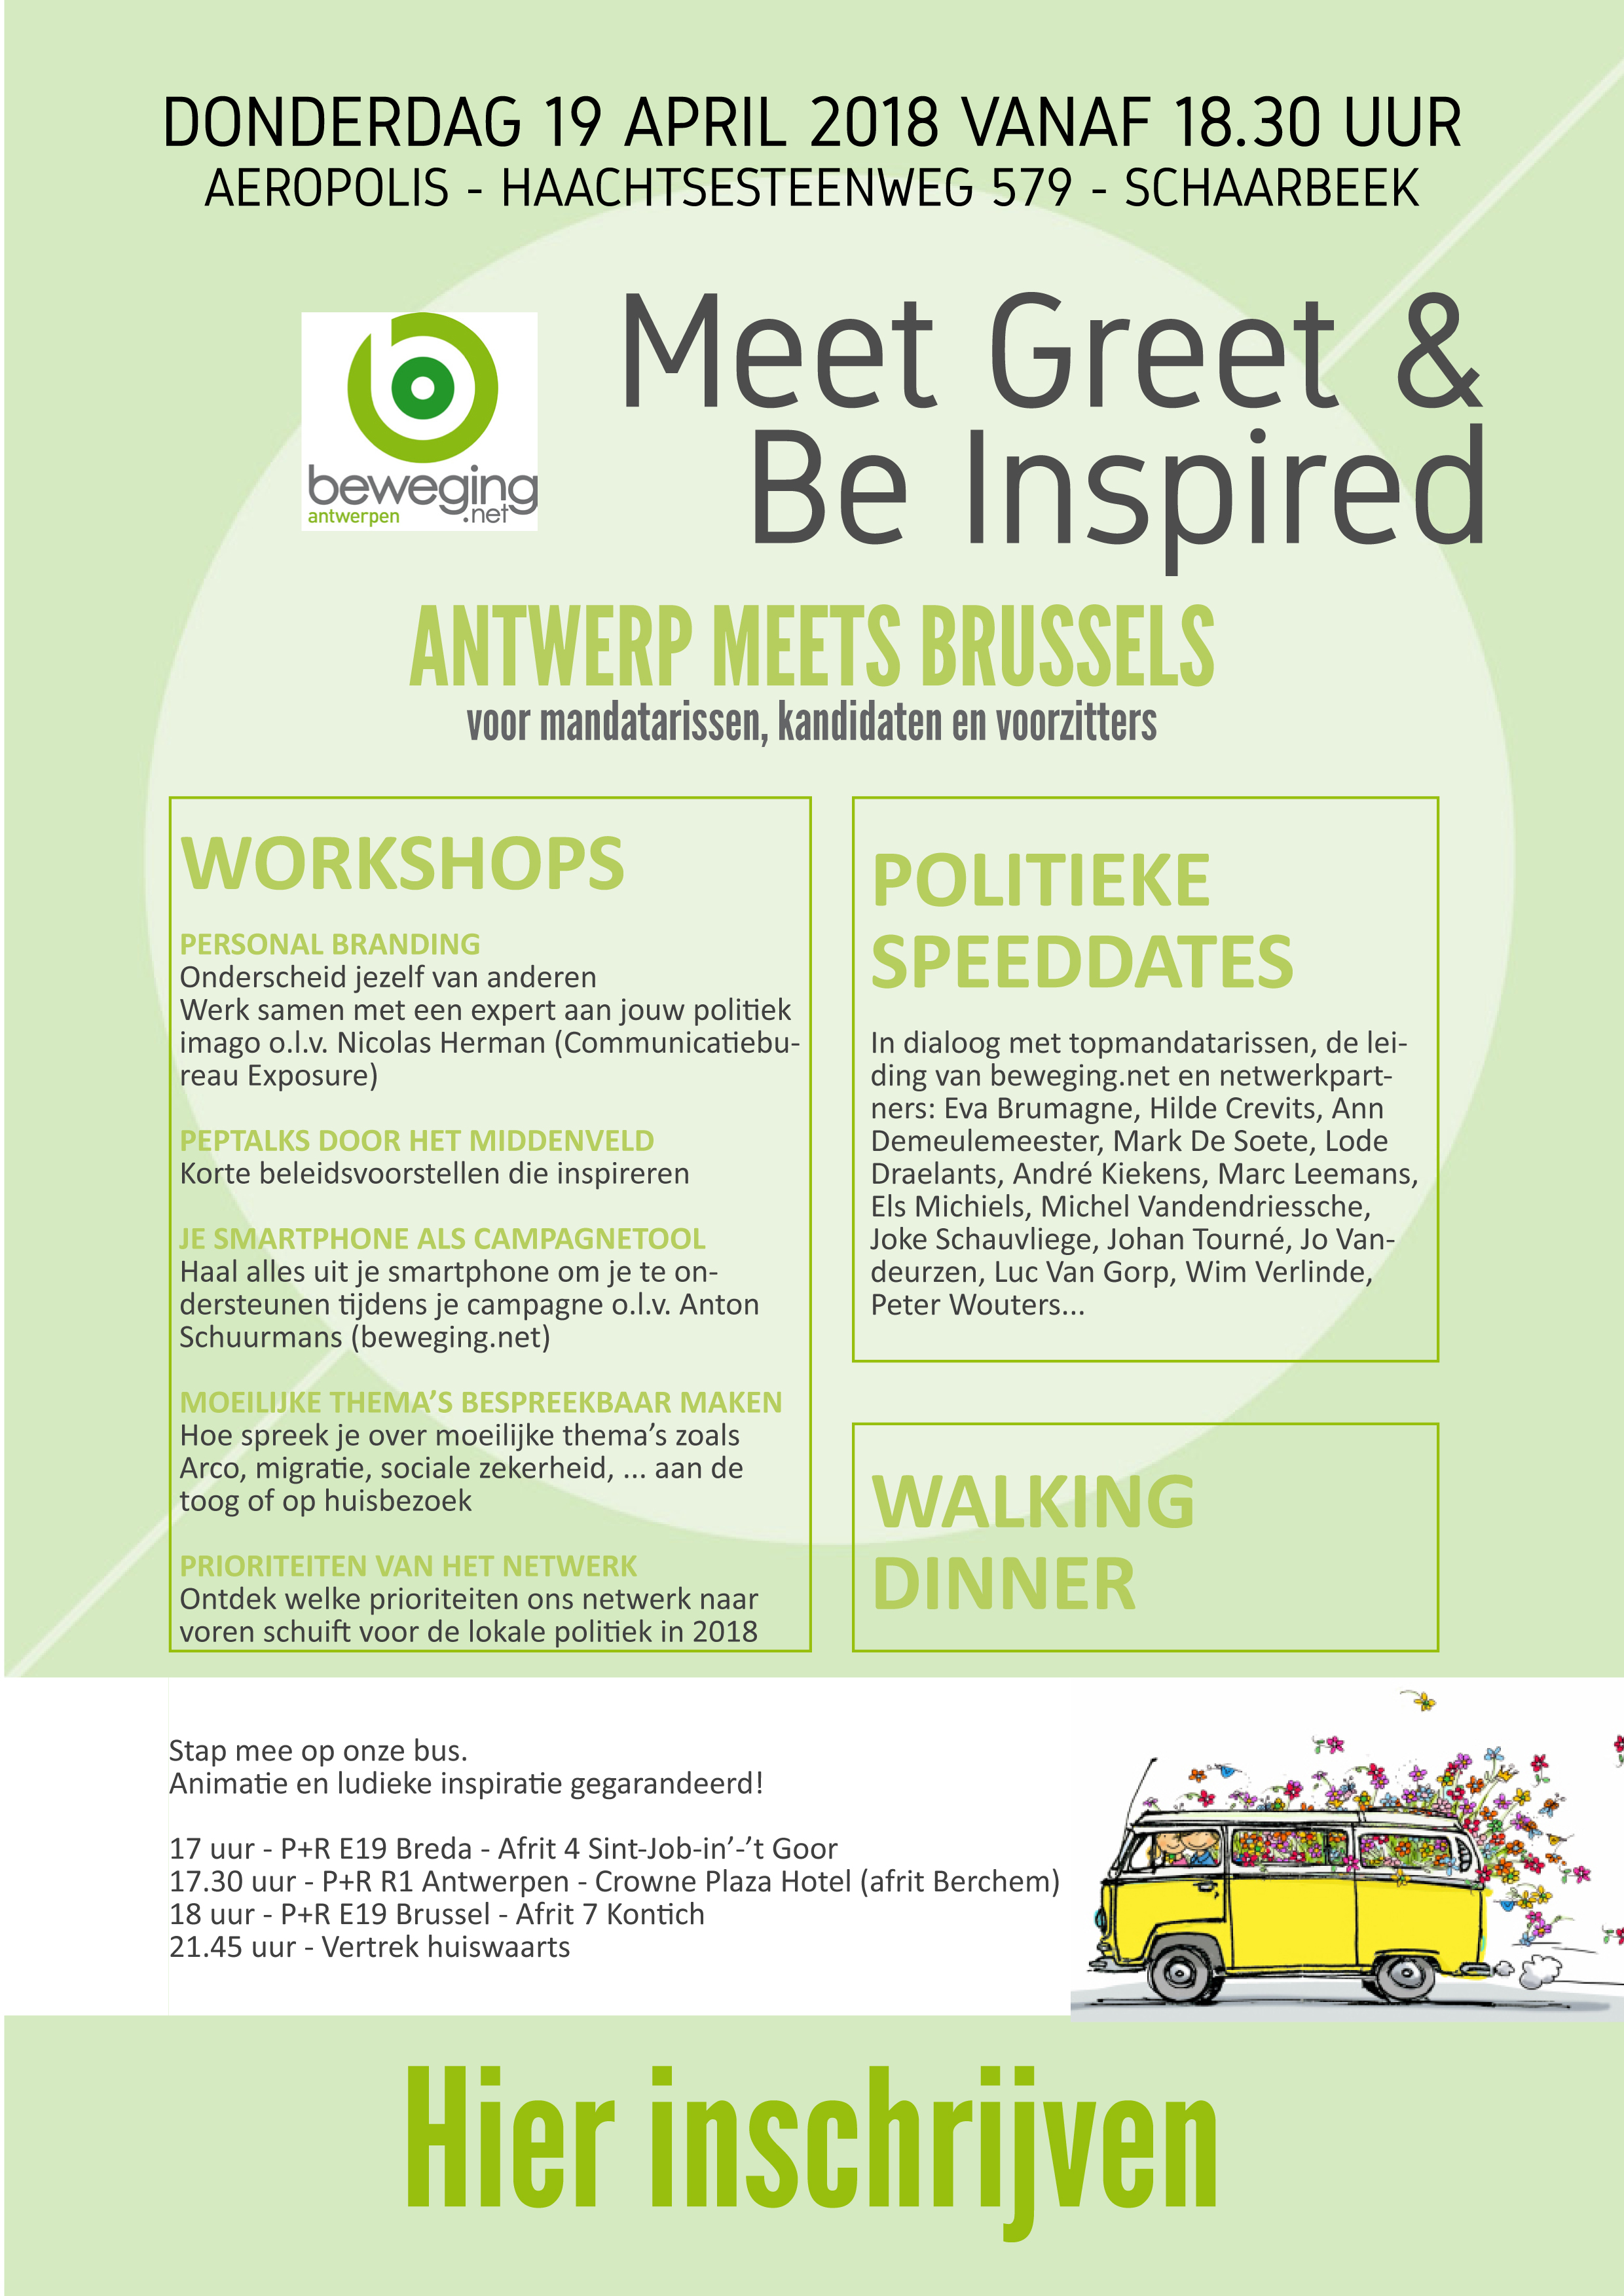 Antwerp meets Brussels v2 copy